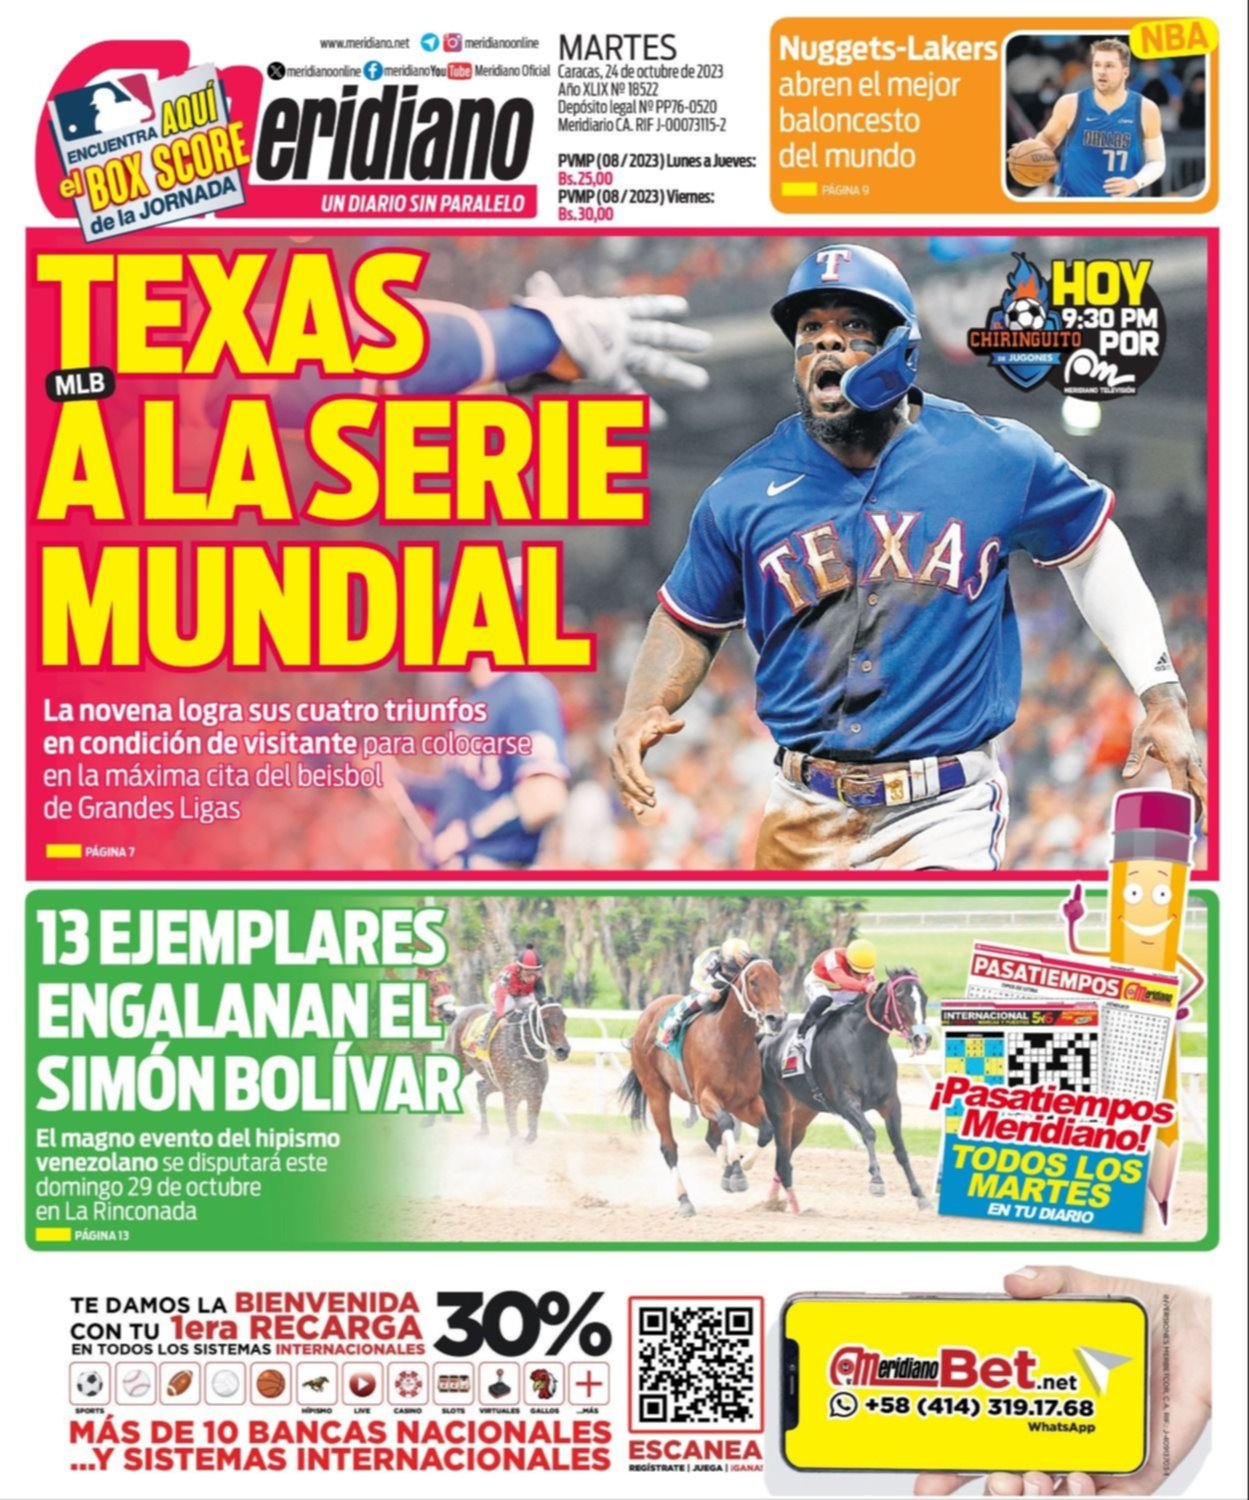 JORNADA DE LA MLB. Horarios, pitchers y las 3 transmisiones en Venezuela